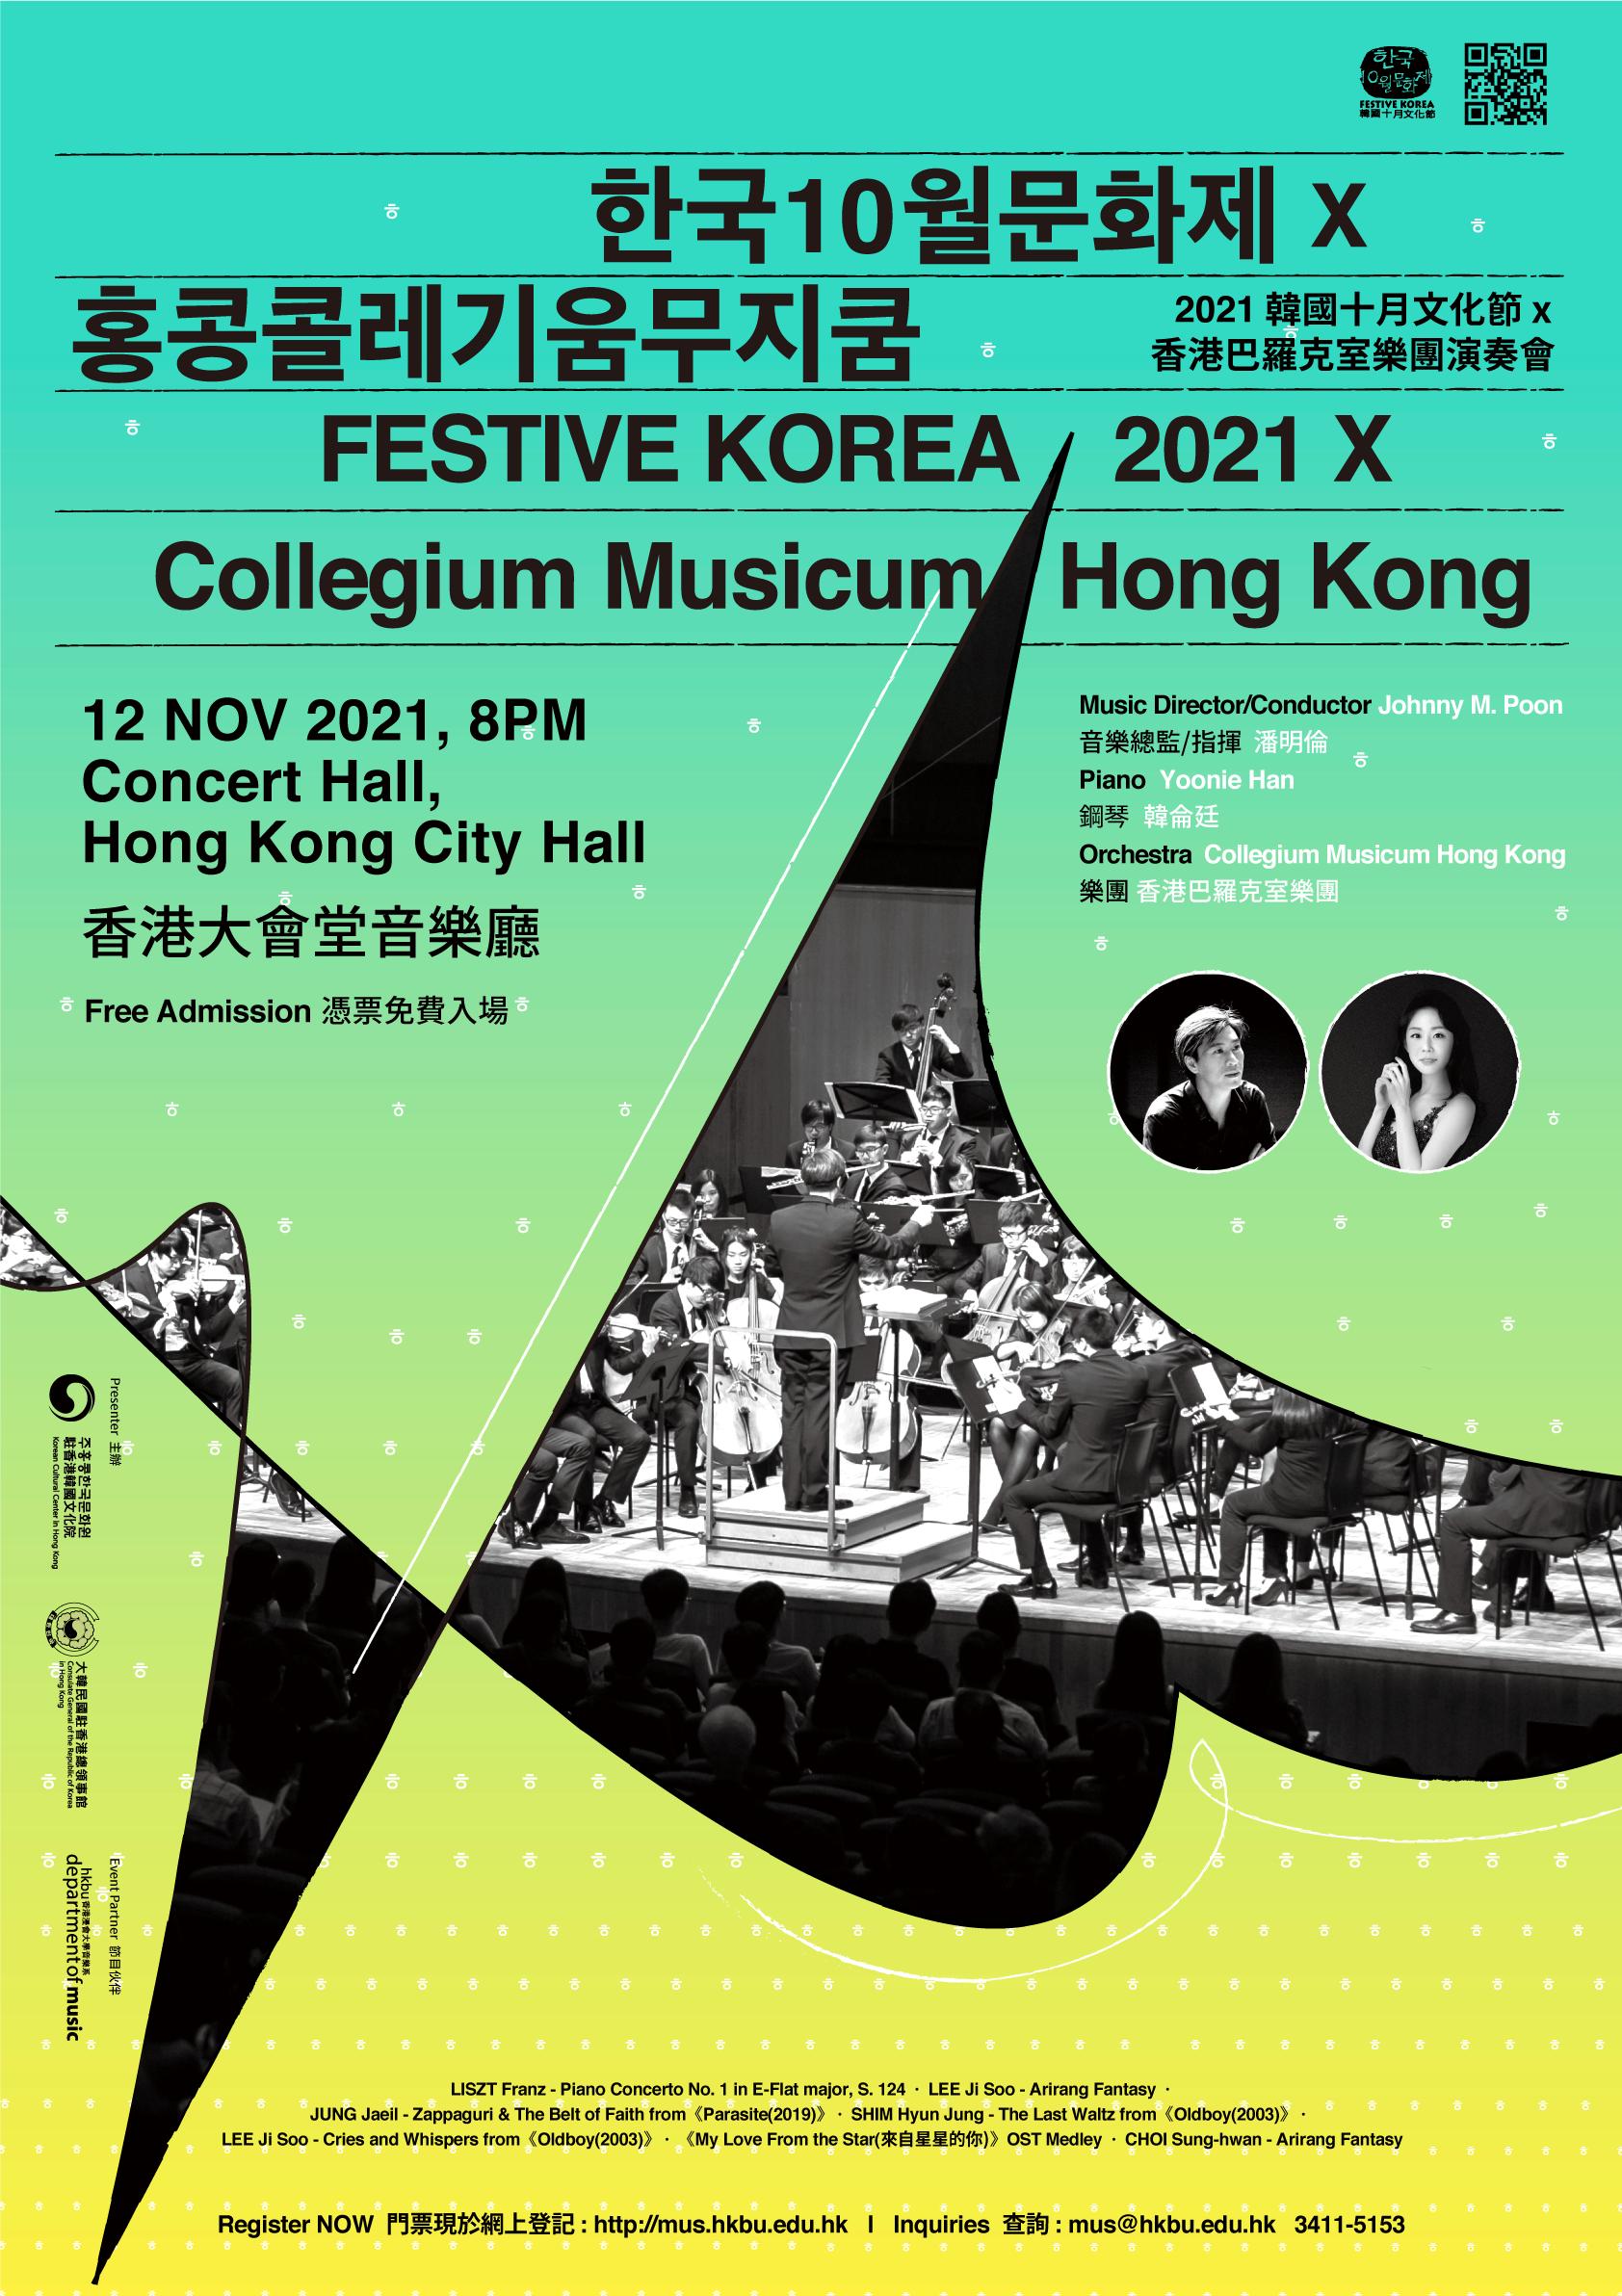 Performance_Festive Korea 2021 x Collegium Musicum Hong Kong Poster.png